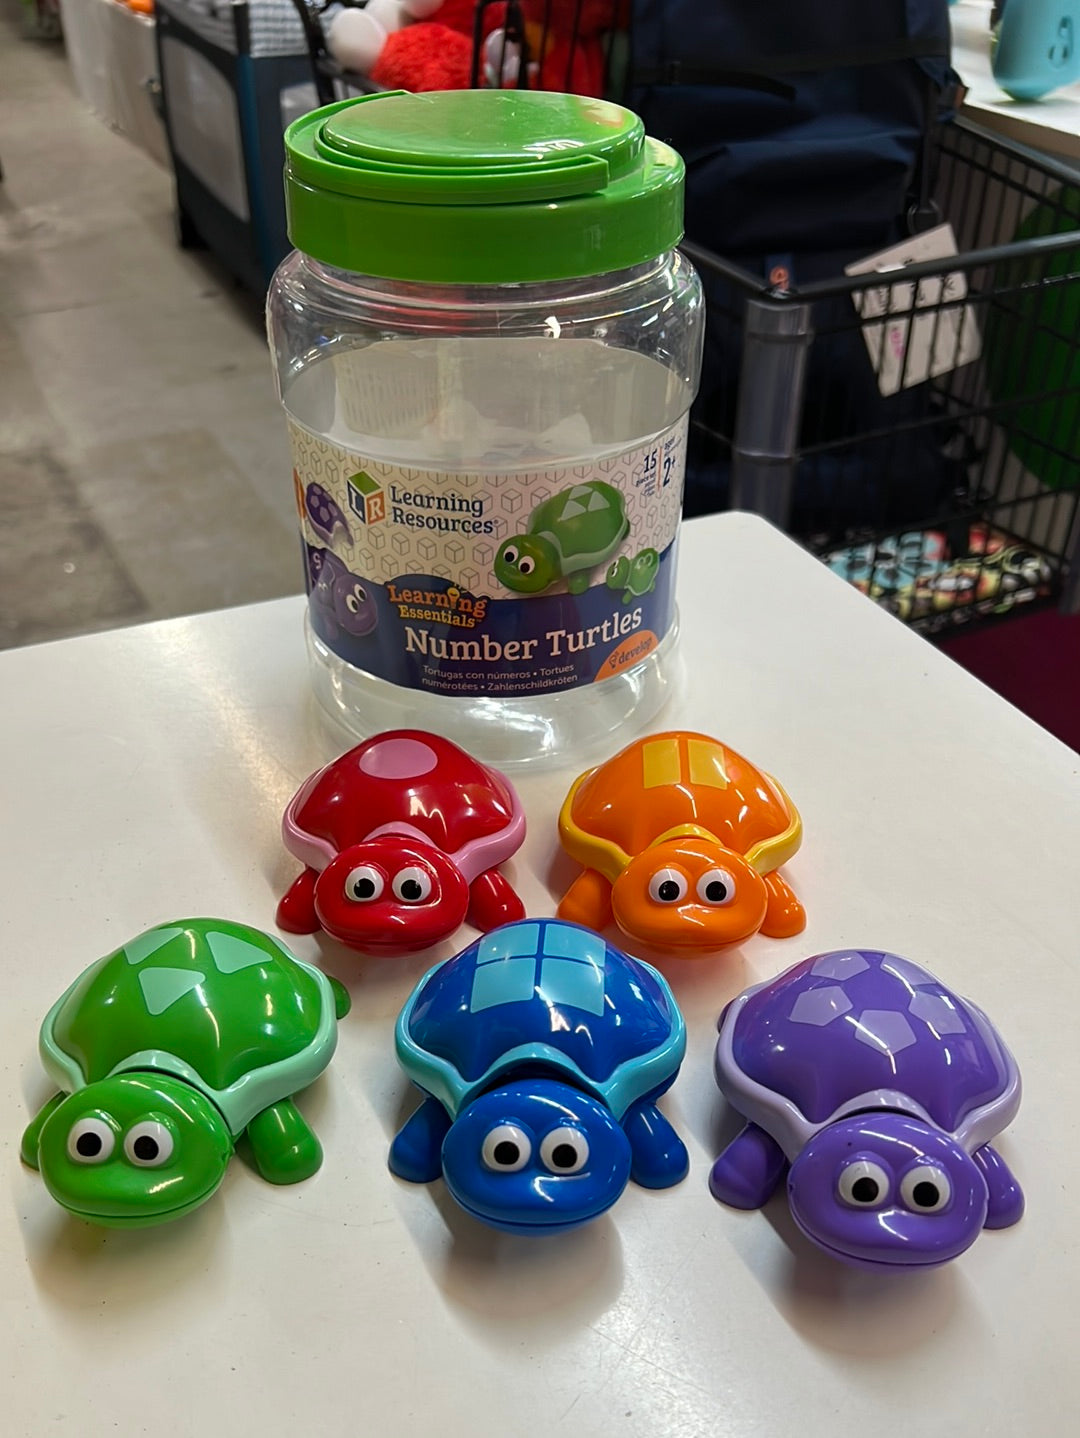 Number Turtles